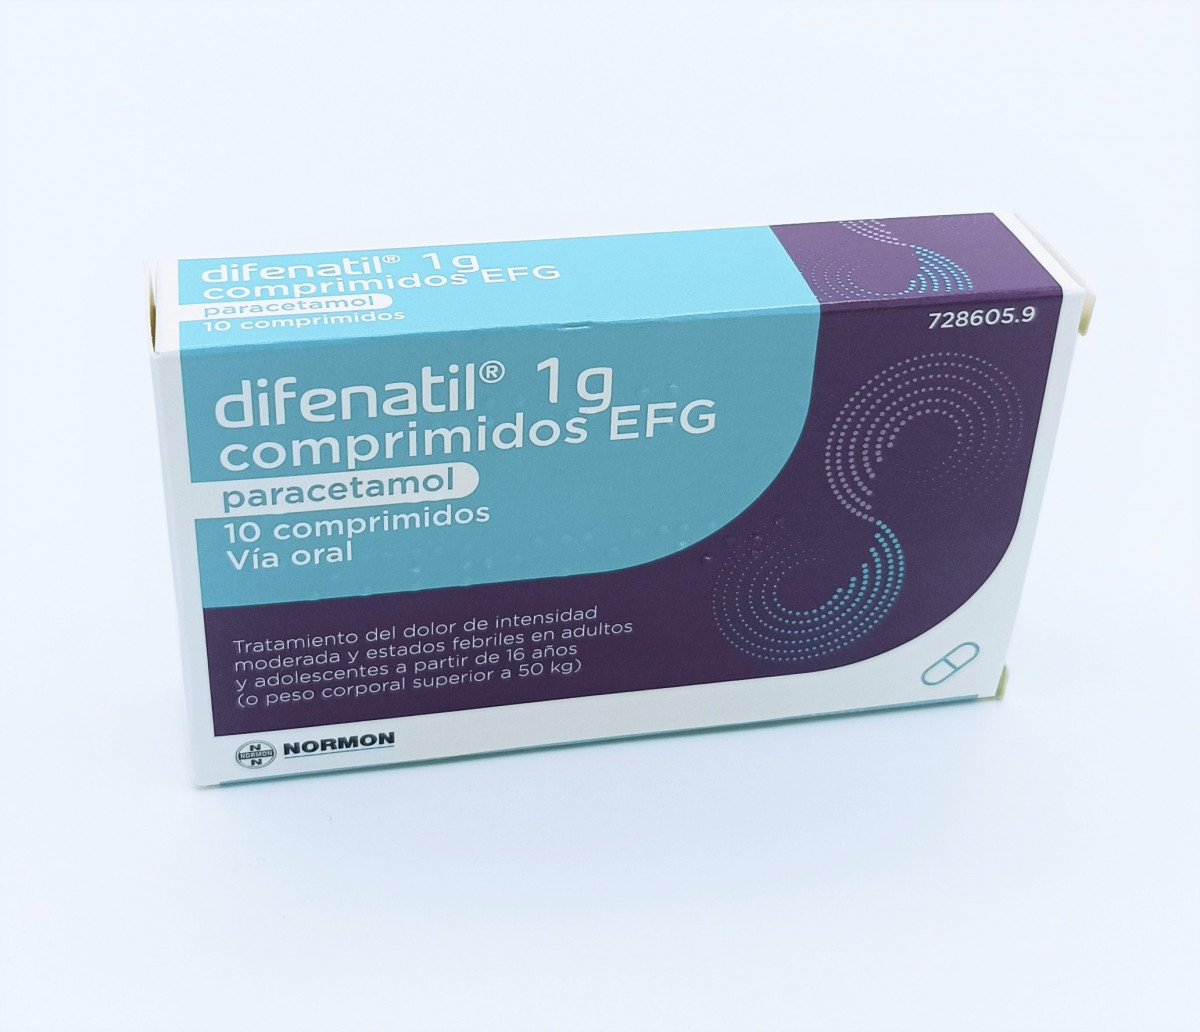 DIFENATIL 1 G COMPRIMIDOS, 10 comprimidos fotografía del envase.